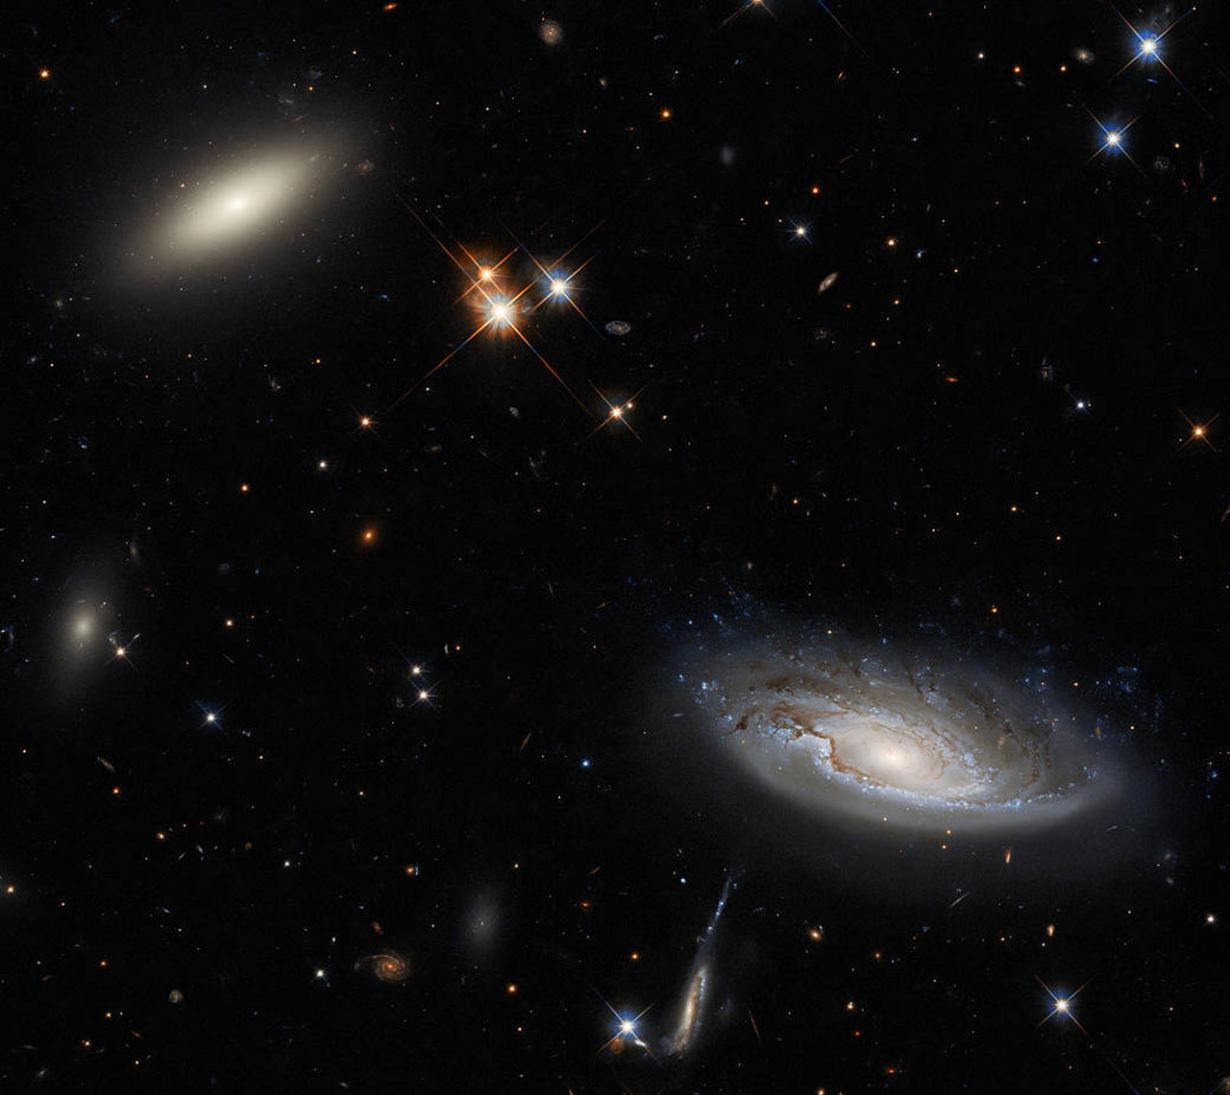 哈勃太空望远镜拍摄的透镜星系2MASX J03193743+413758和螺旋星系UGC 2665